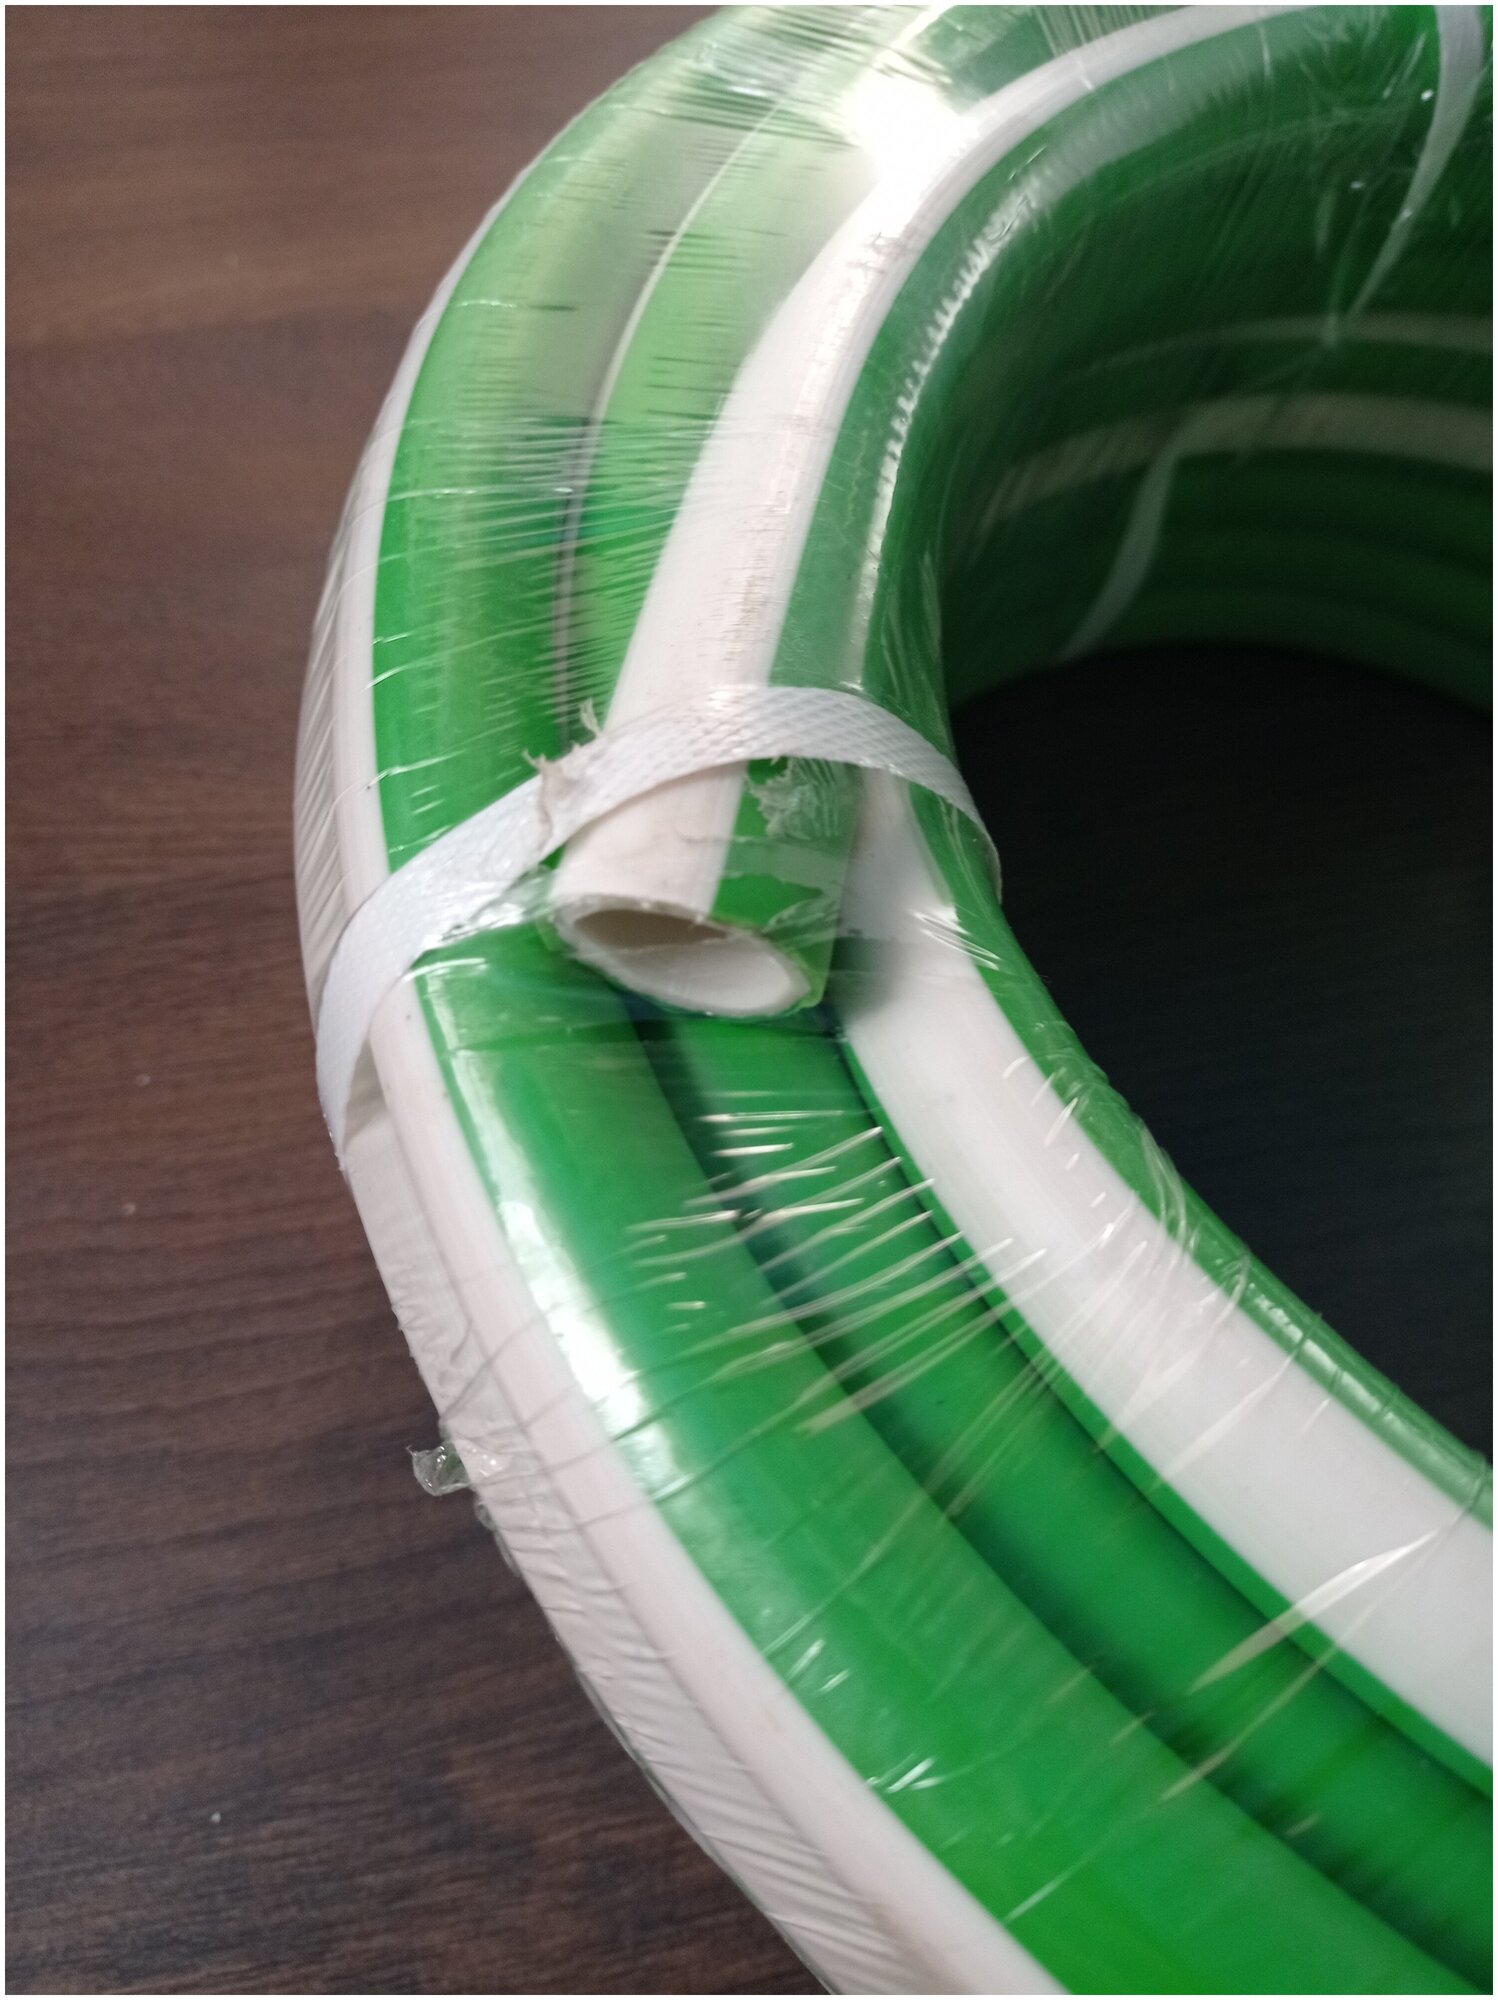 Шланг армированный, морозостойкий от -50 до +90 градусов ТЭП-Ф 3/4 (18мм )25 метров три слоя, термоэластопласт, зеленый с белой полосой - фотография № 2